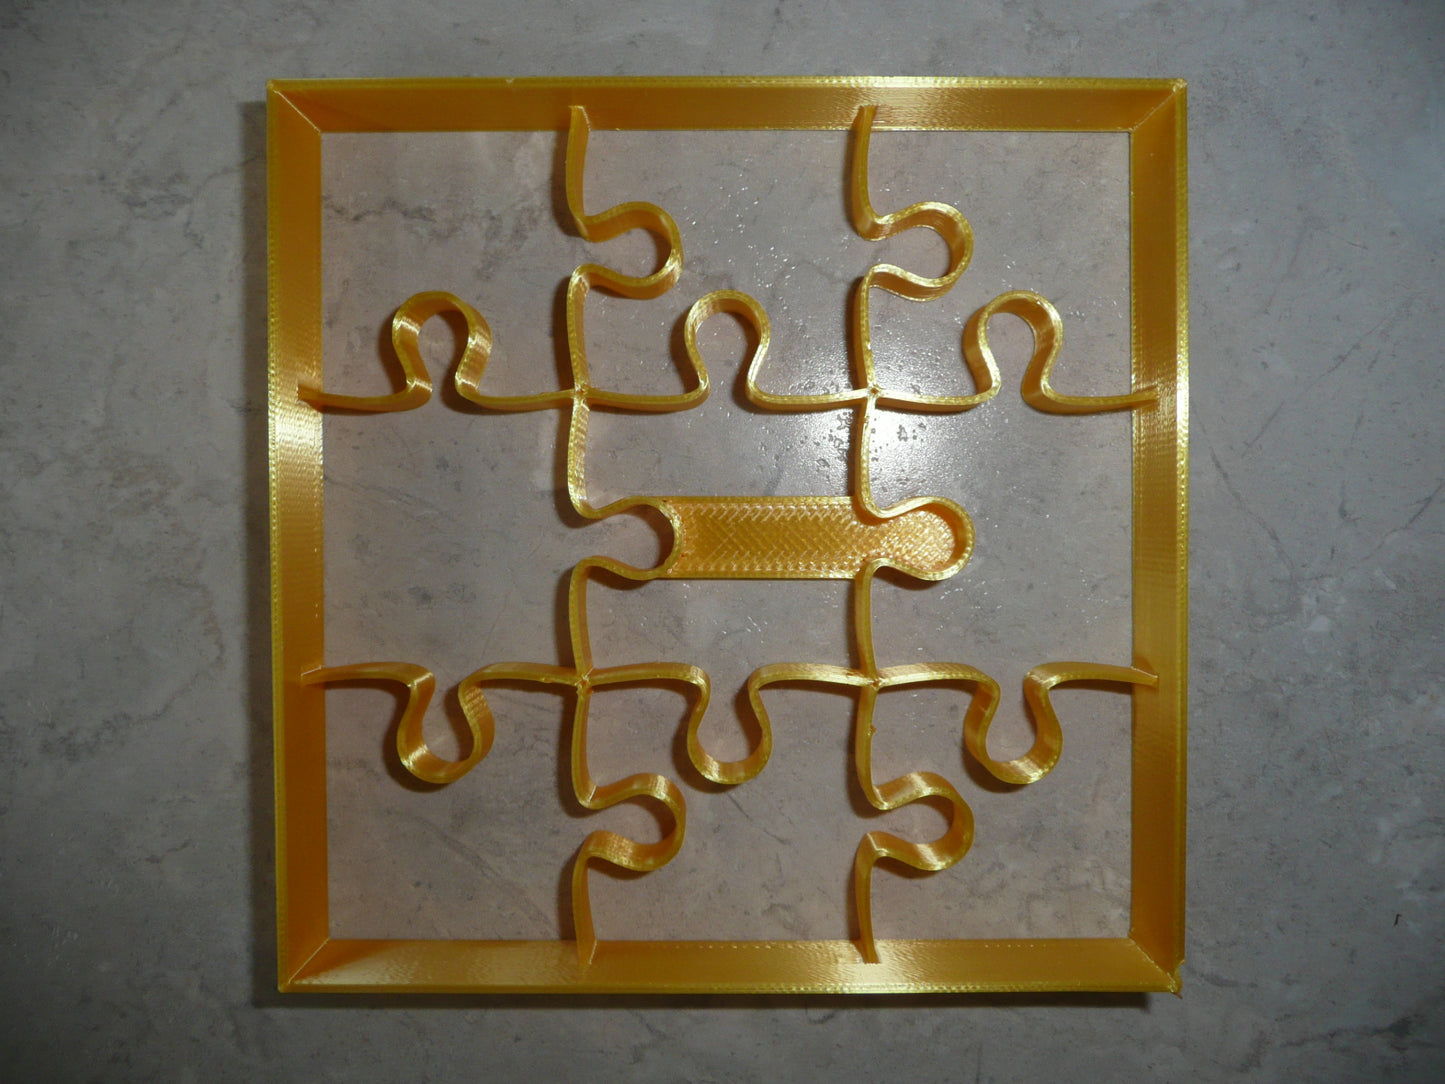 6x Puzzle Piece Shape Fondant Cutter Cupcake Topper 1.75 IN USA FD5126